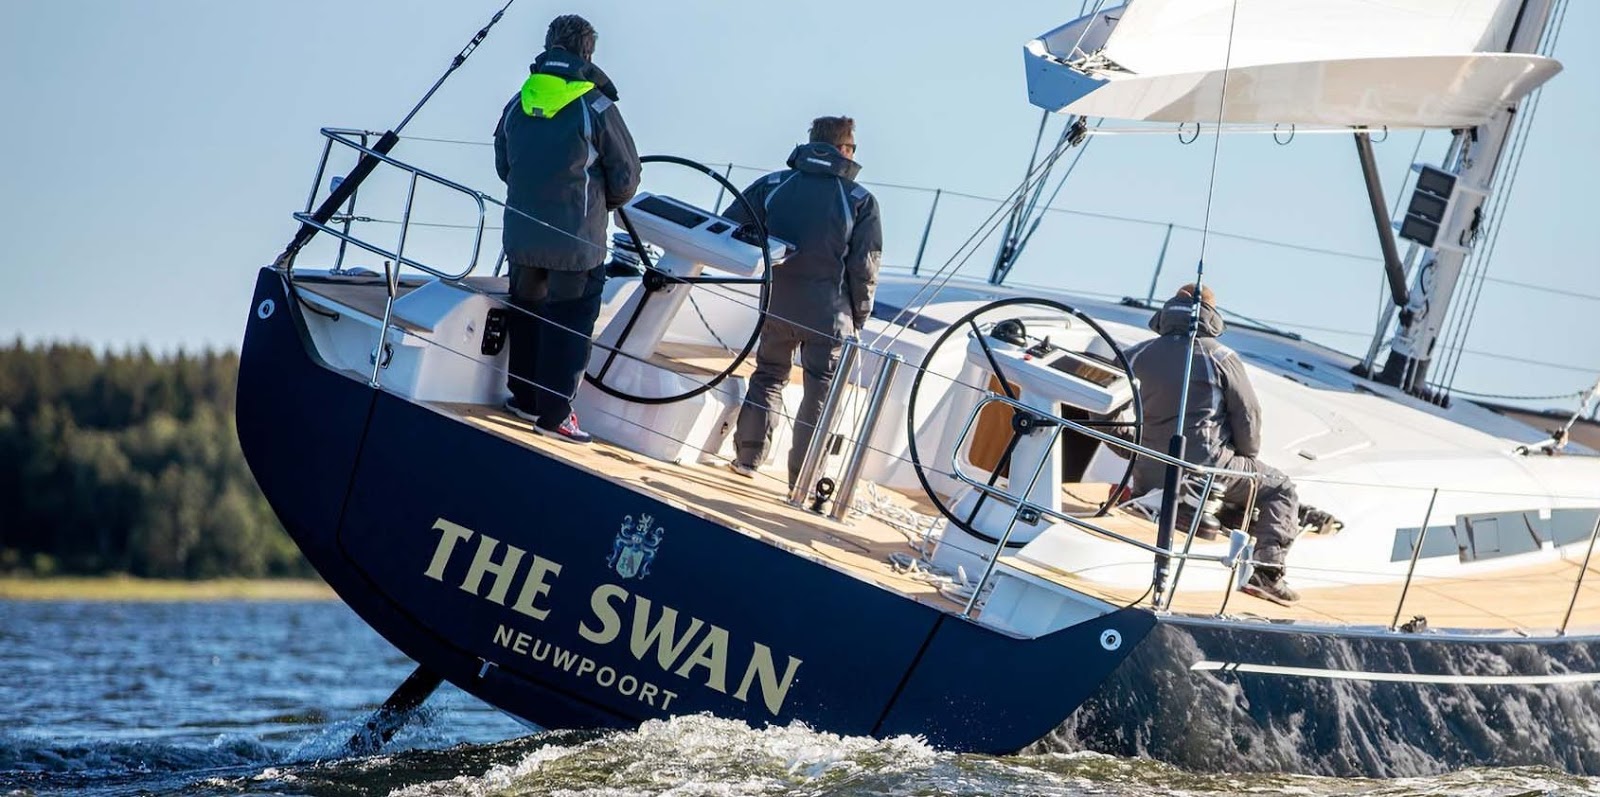 48 foot swan sailboat